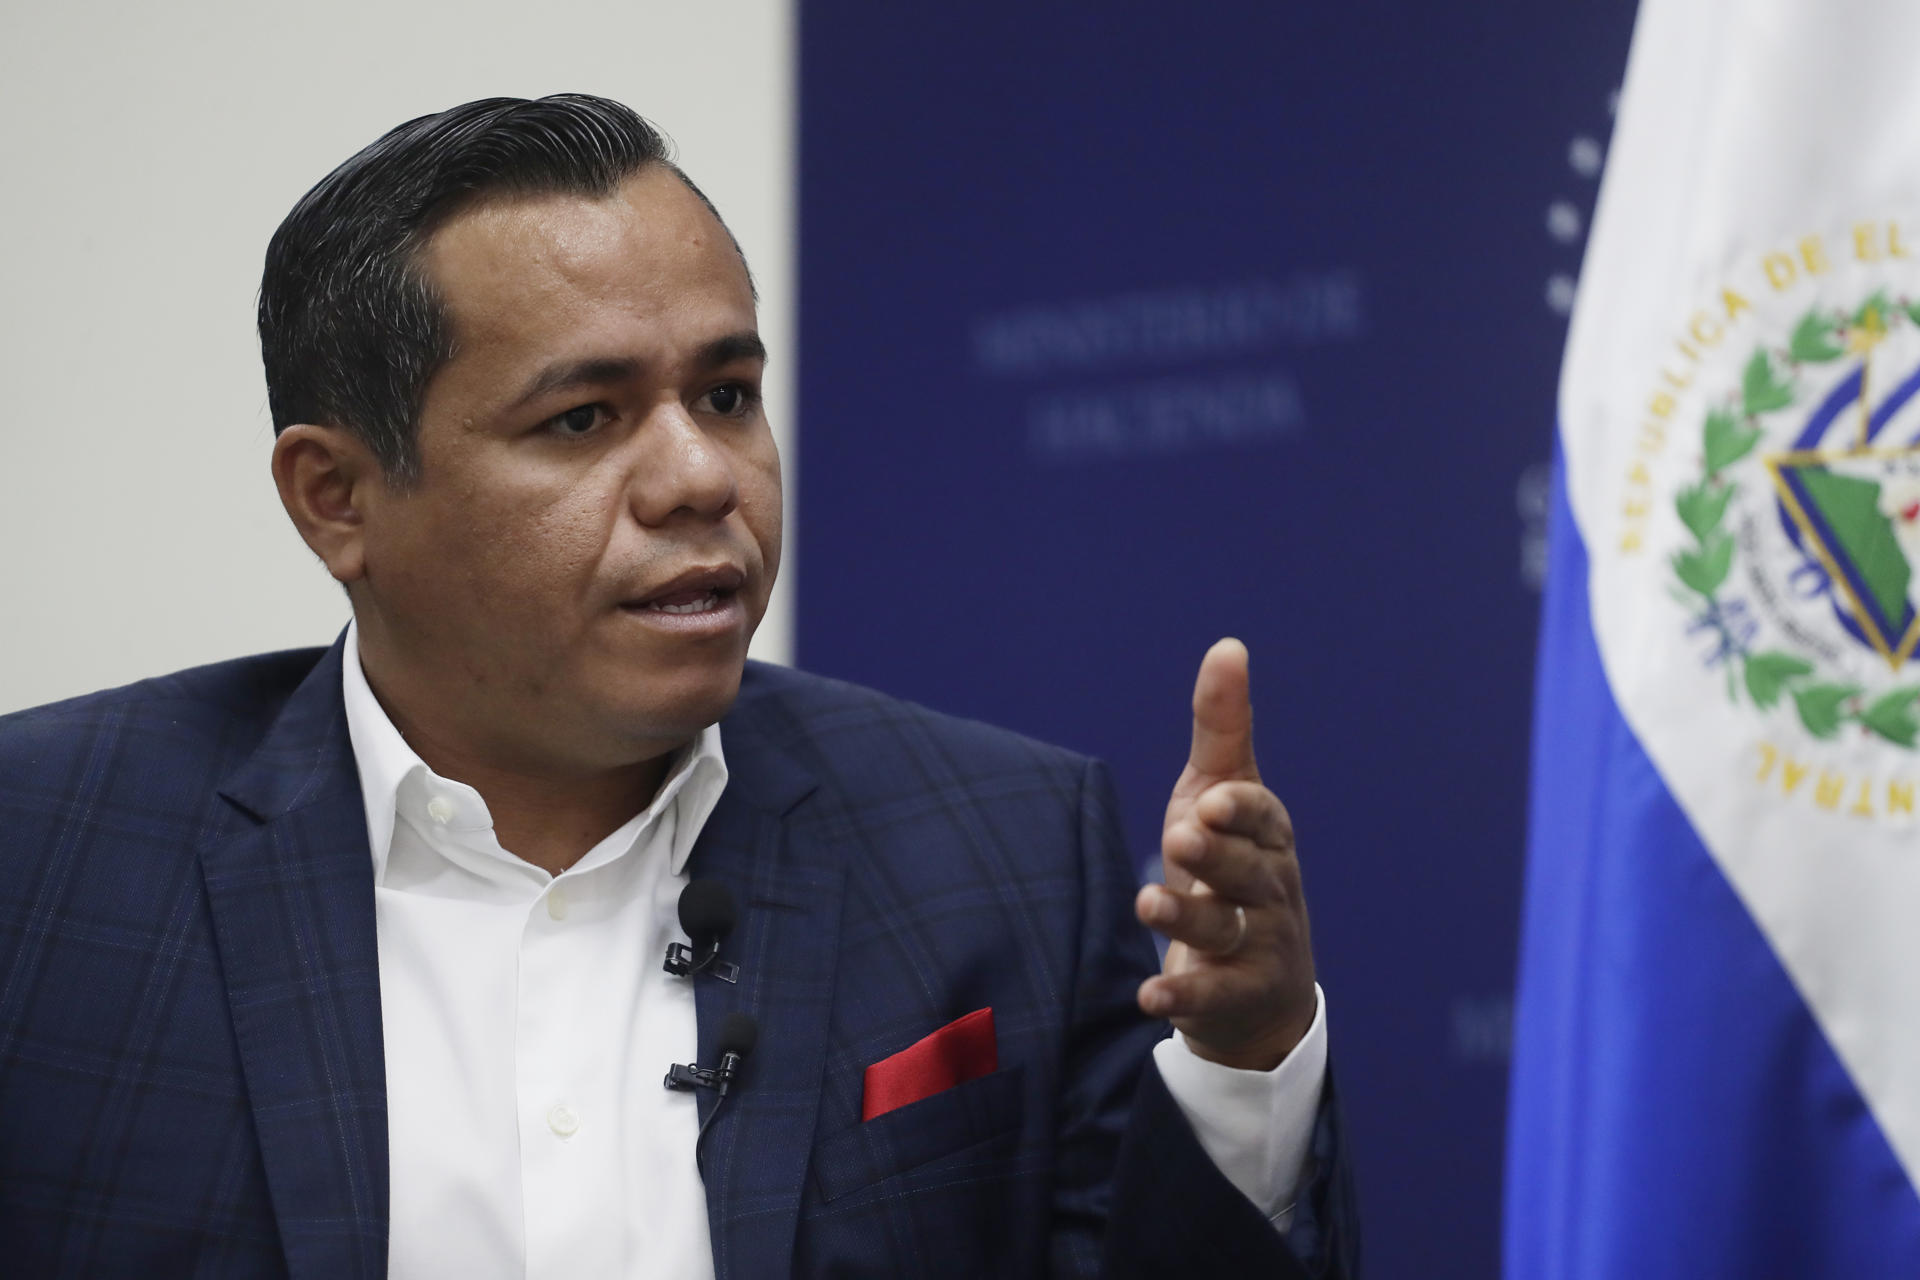 Trabajadores de El Salvador recibirán 400 dólares de pensión, según ministro